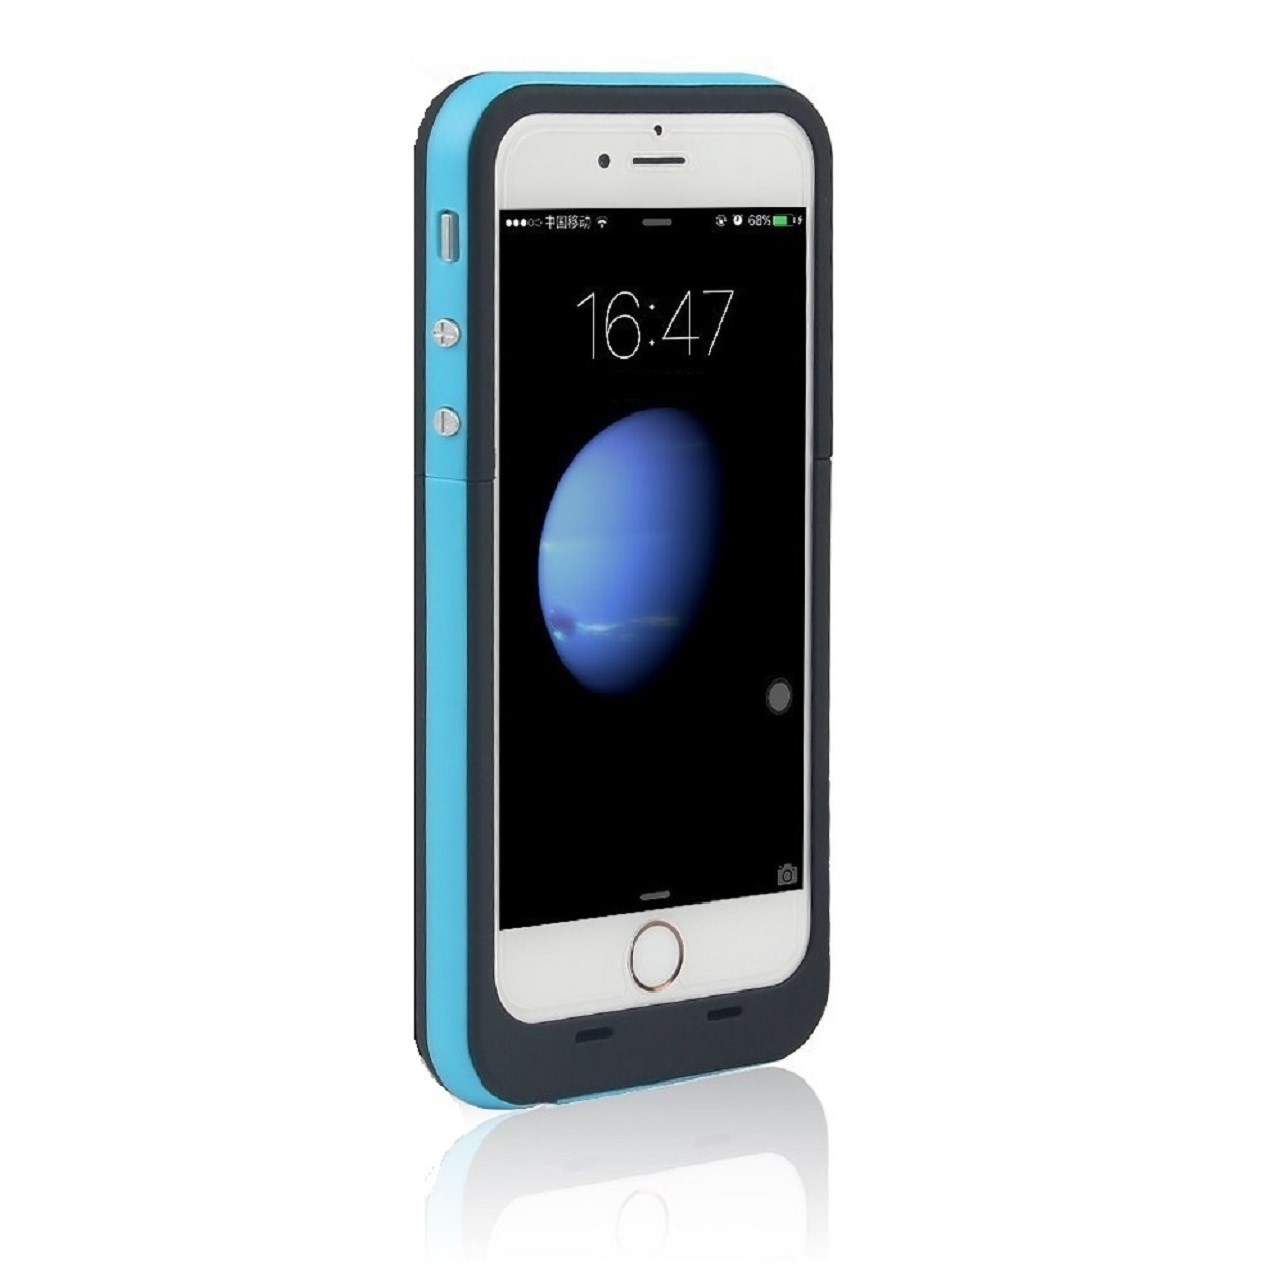 کاور شارژ بلکس مدل Series 6 ظرفیت 3800 میلی آمپر مناسب برای گوشی های iPhone 6 6s